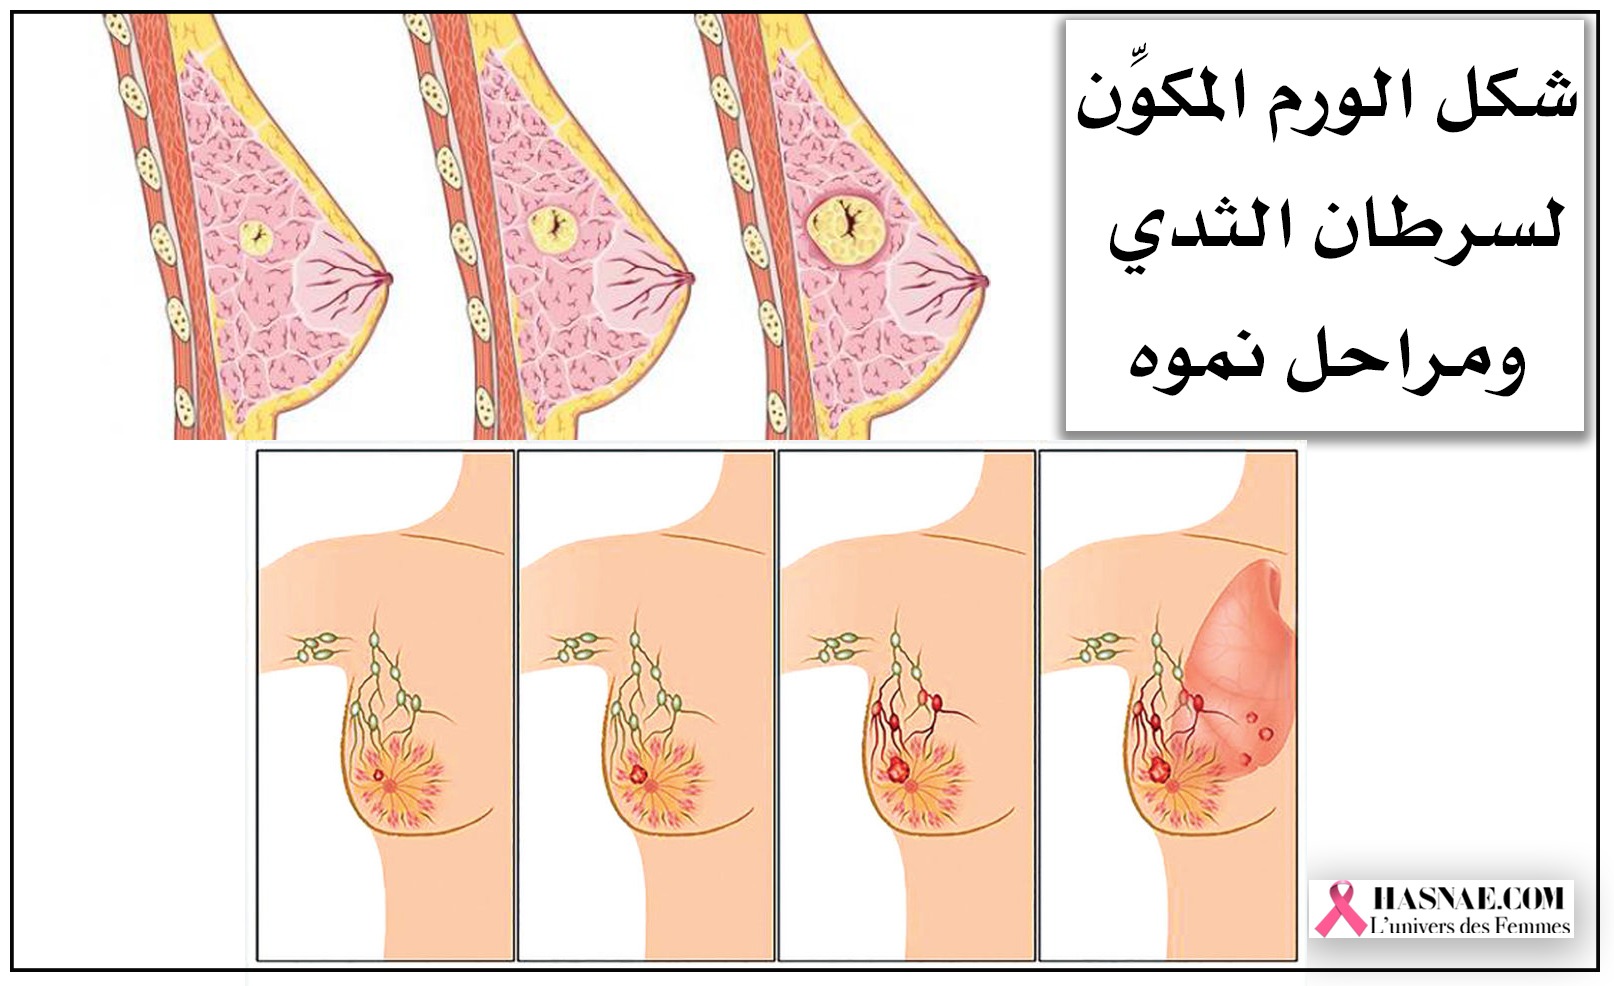 أعراض سرطان الثدي الحميد والخبيث